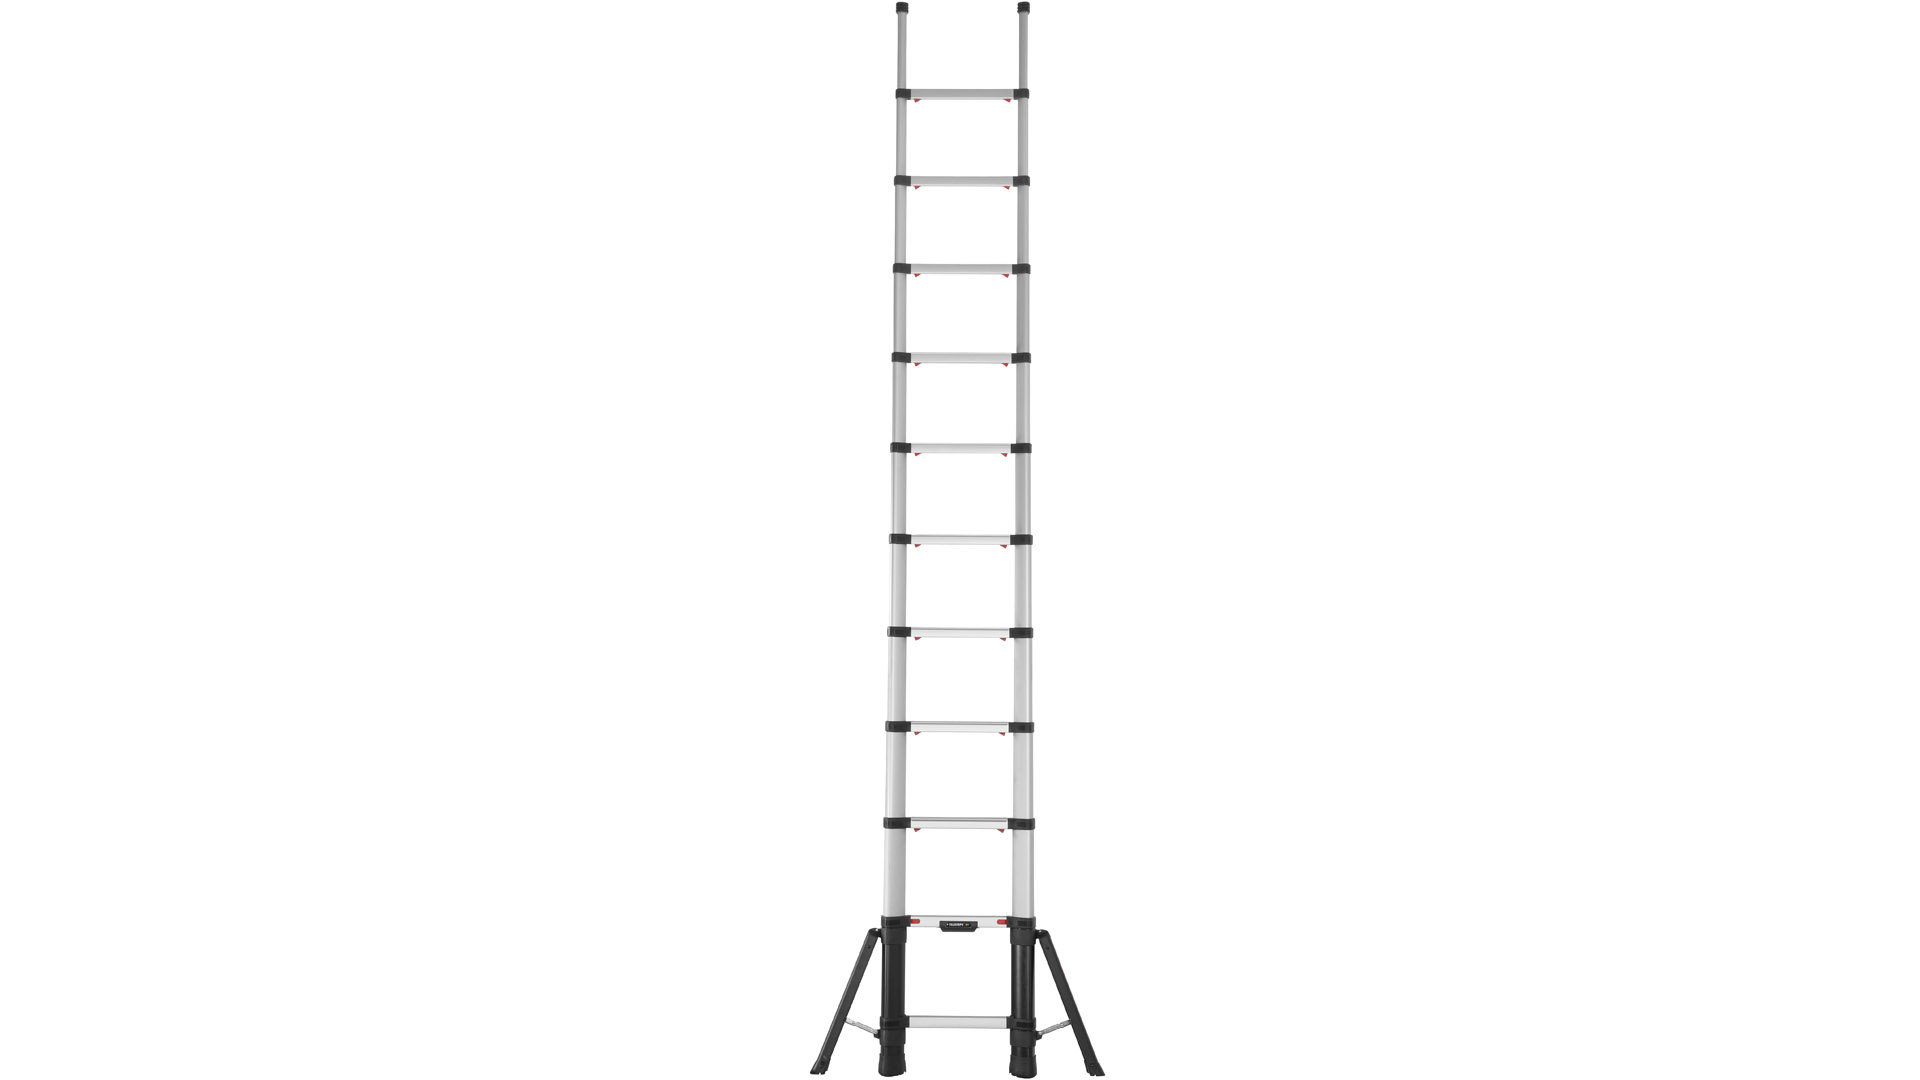 Teleskop-Sprossenanlegeleiter, 11 Sprossen, Leiterlänge max. 3490 mm, Leiterlänge zusammengeschoben 870 mm, Gewicht 15,2 kg